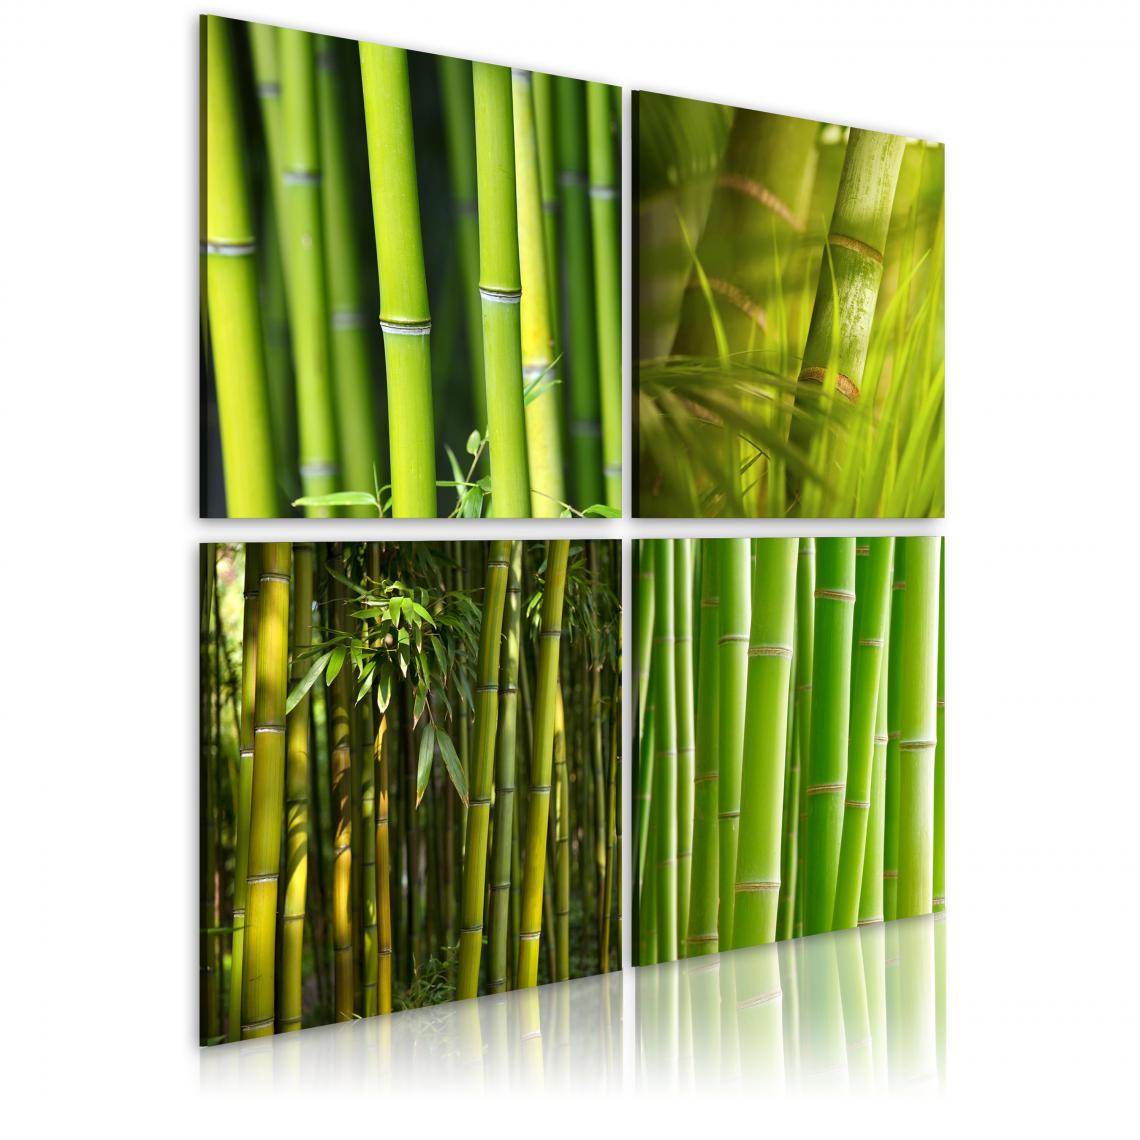 Decoshop26 - Tableau sur toile en 4 panneaux décoration murale image imprimée cadre en bois à suspendre Bambous 90x90 cm 11_0008900 - Tableaux, peintures